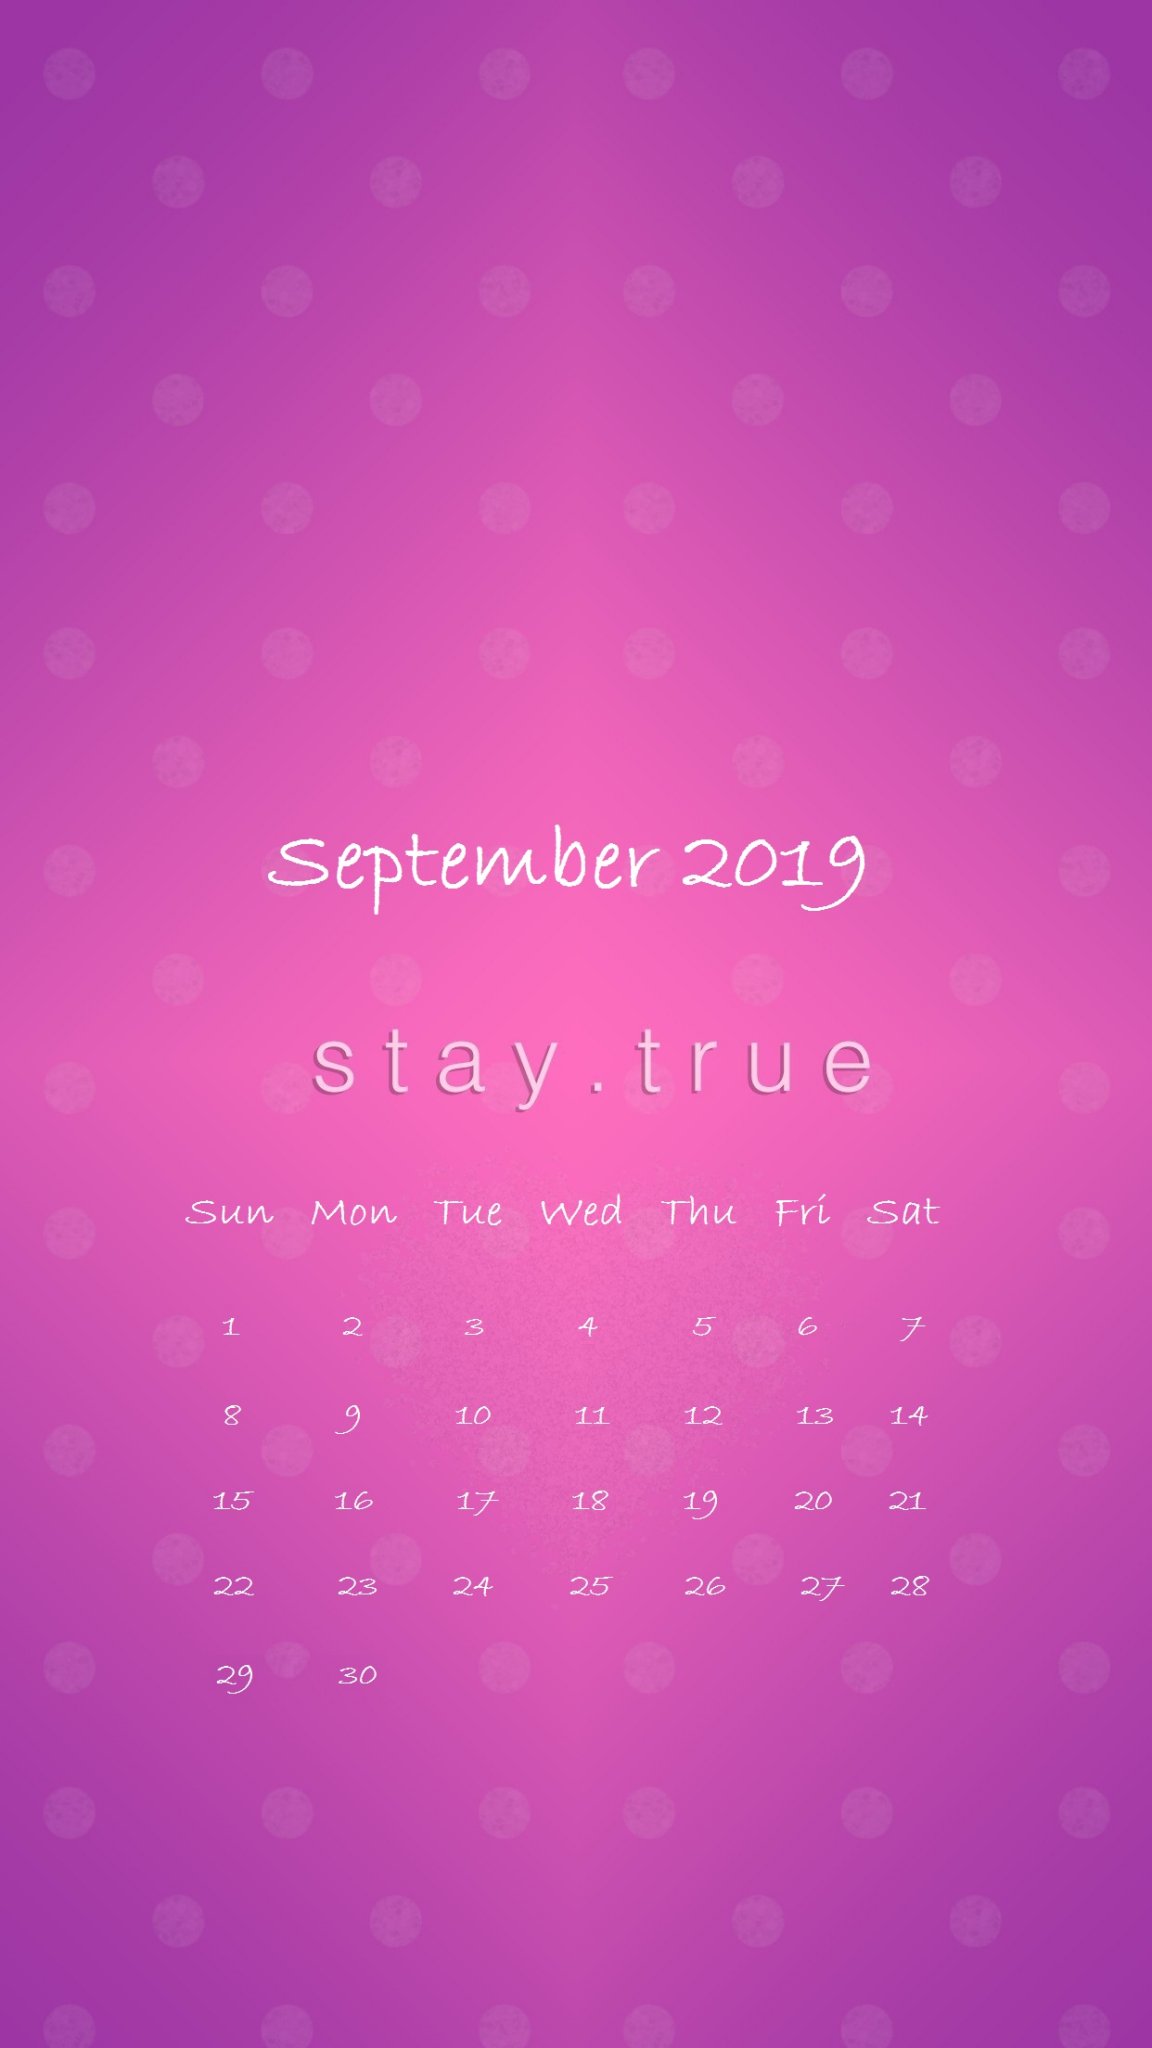 Stay True September 2019 iPhone Calendar Wallpaper